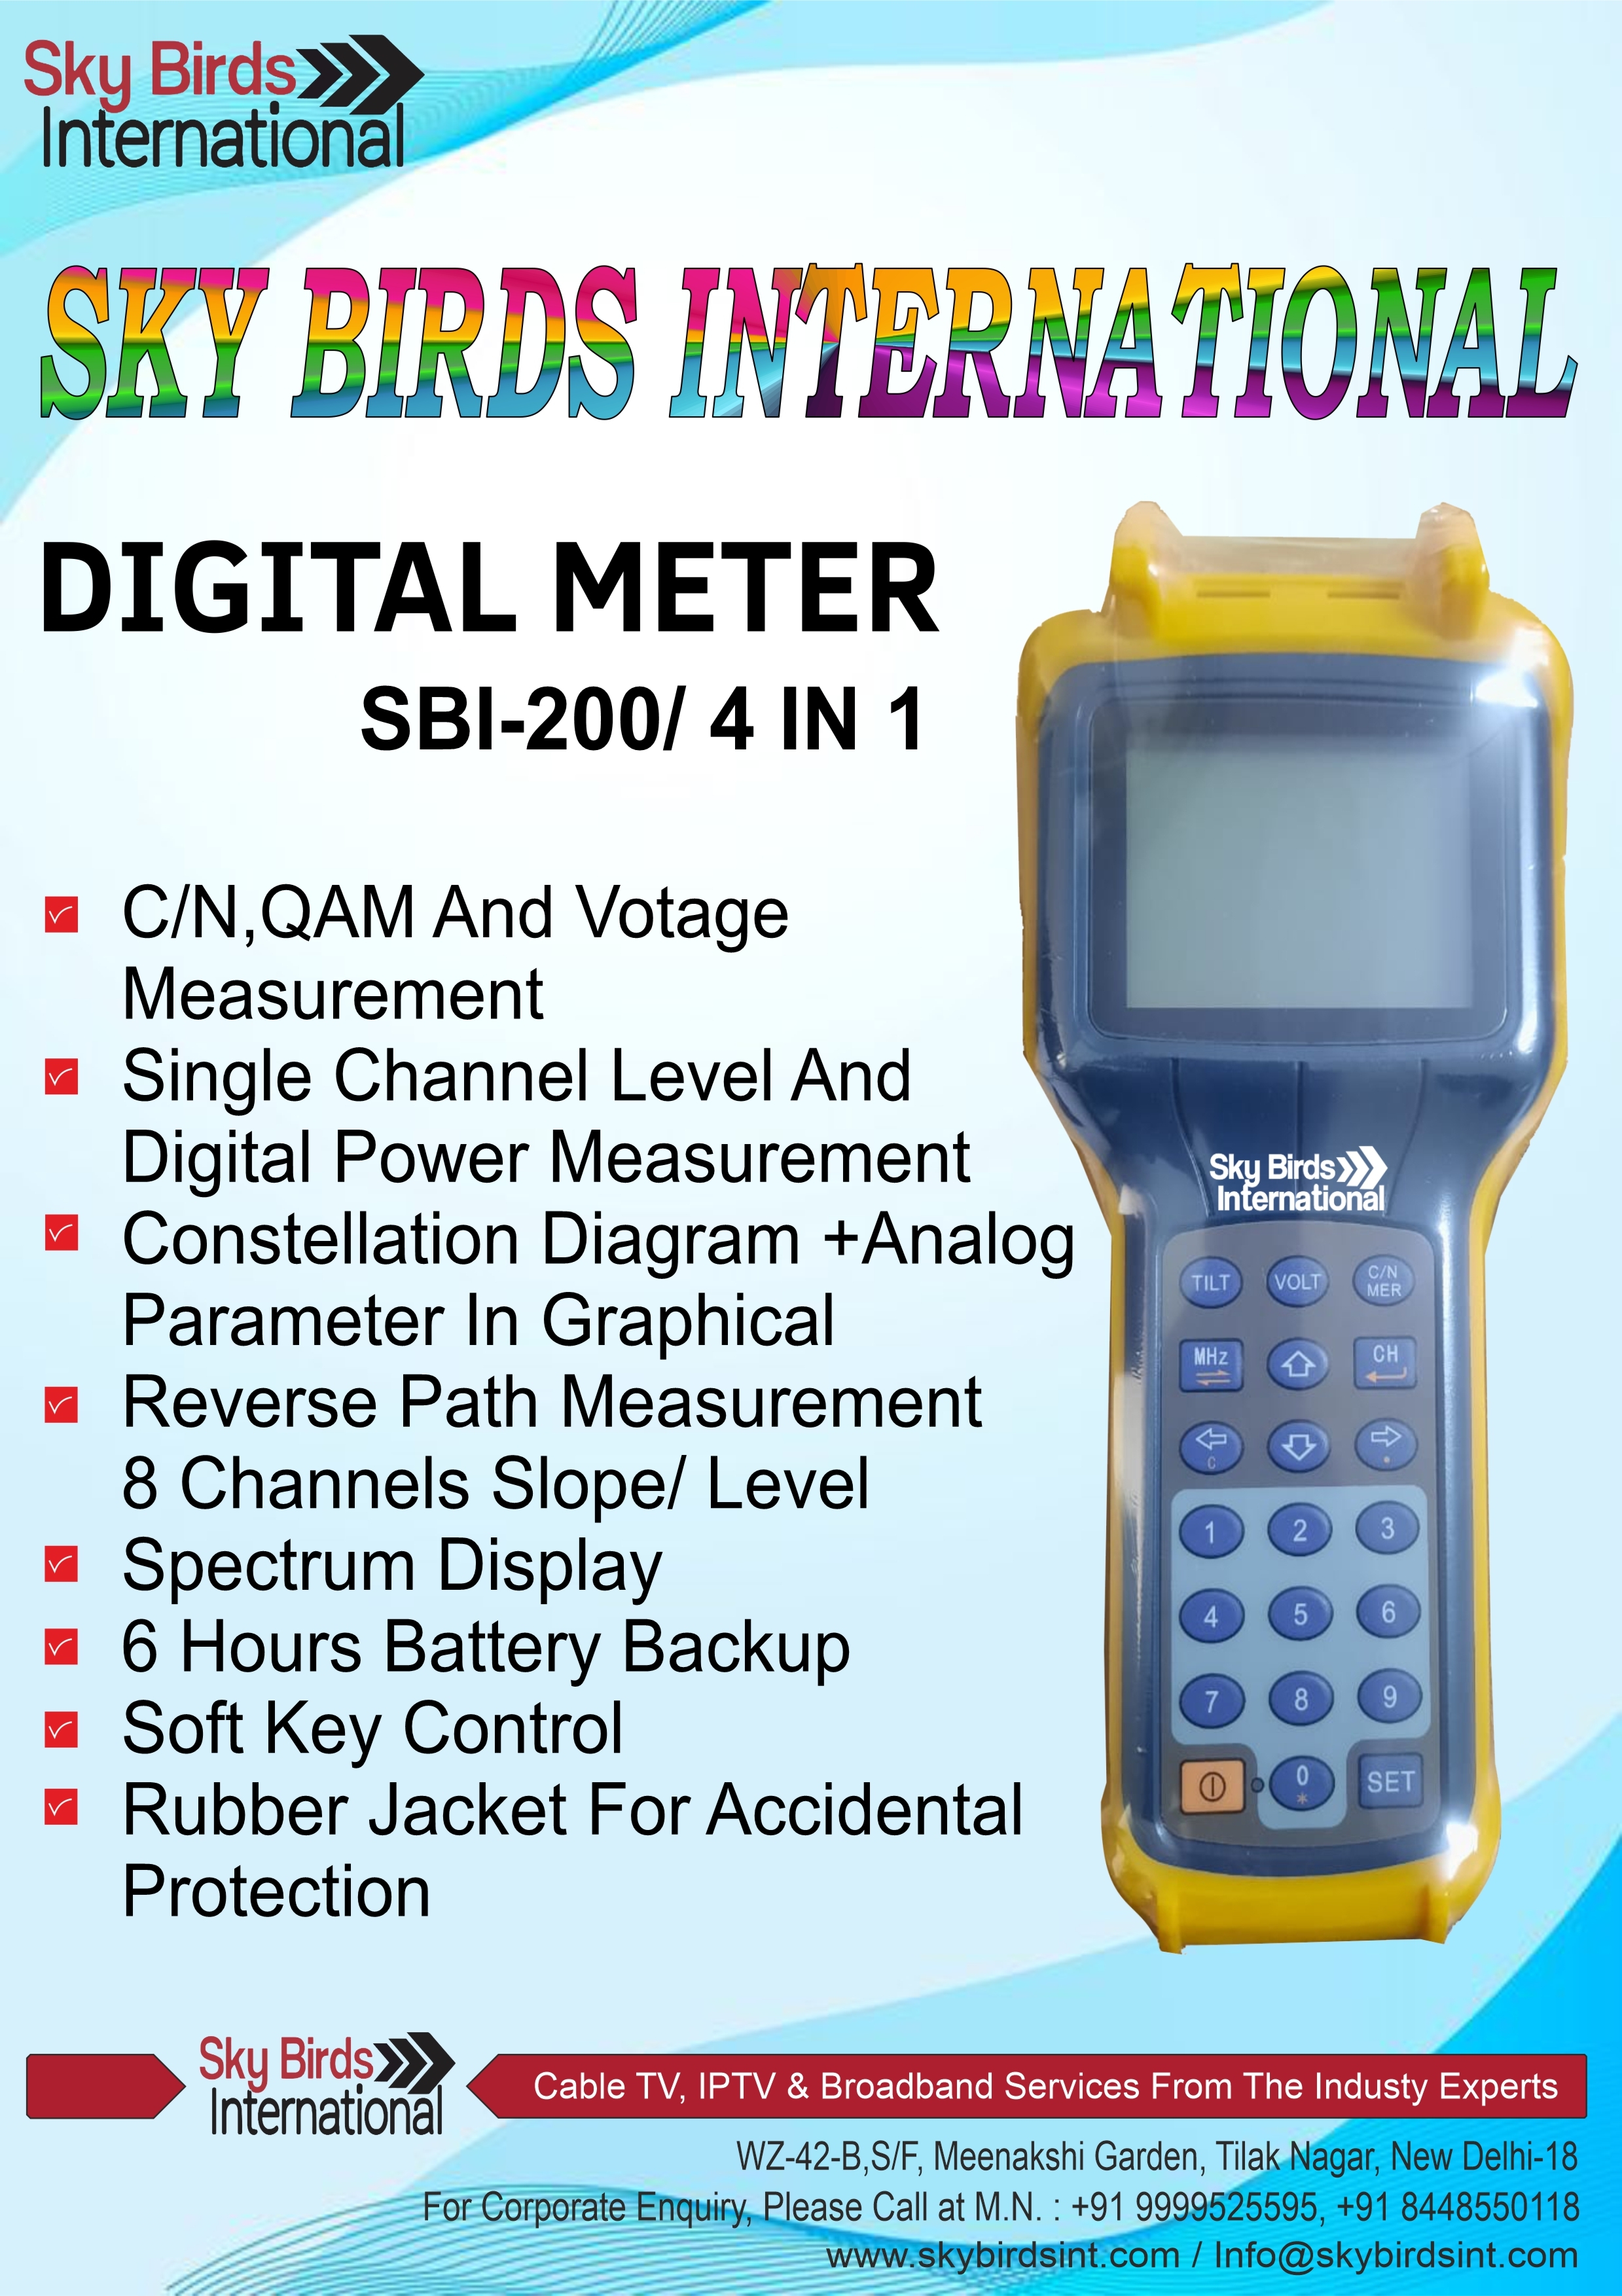 SBI-200 DIGITAL METER